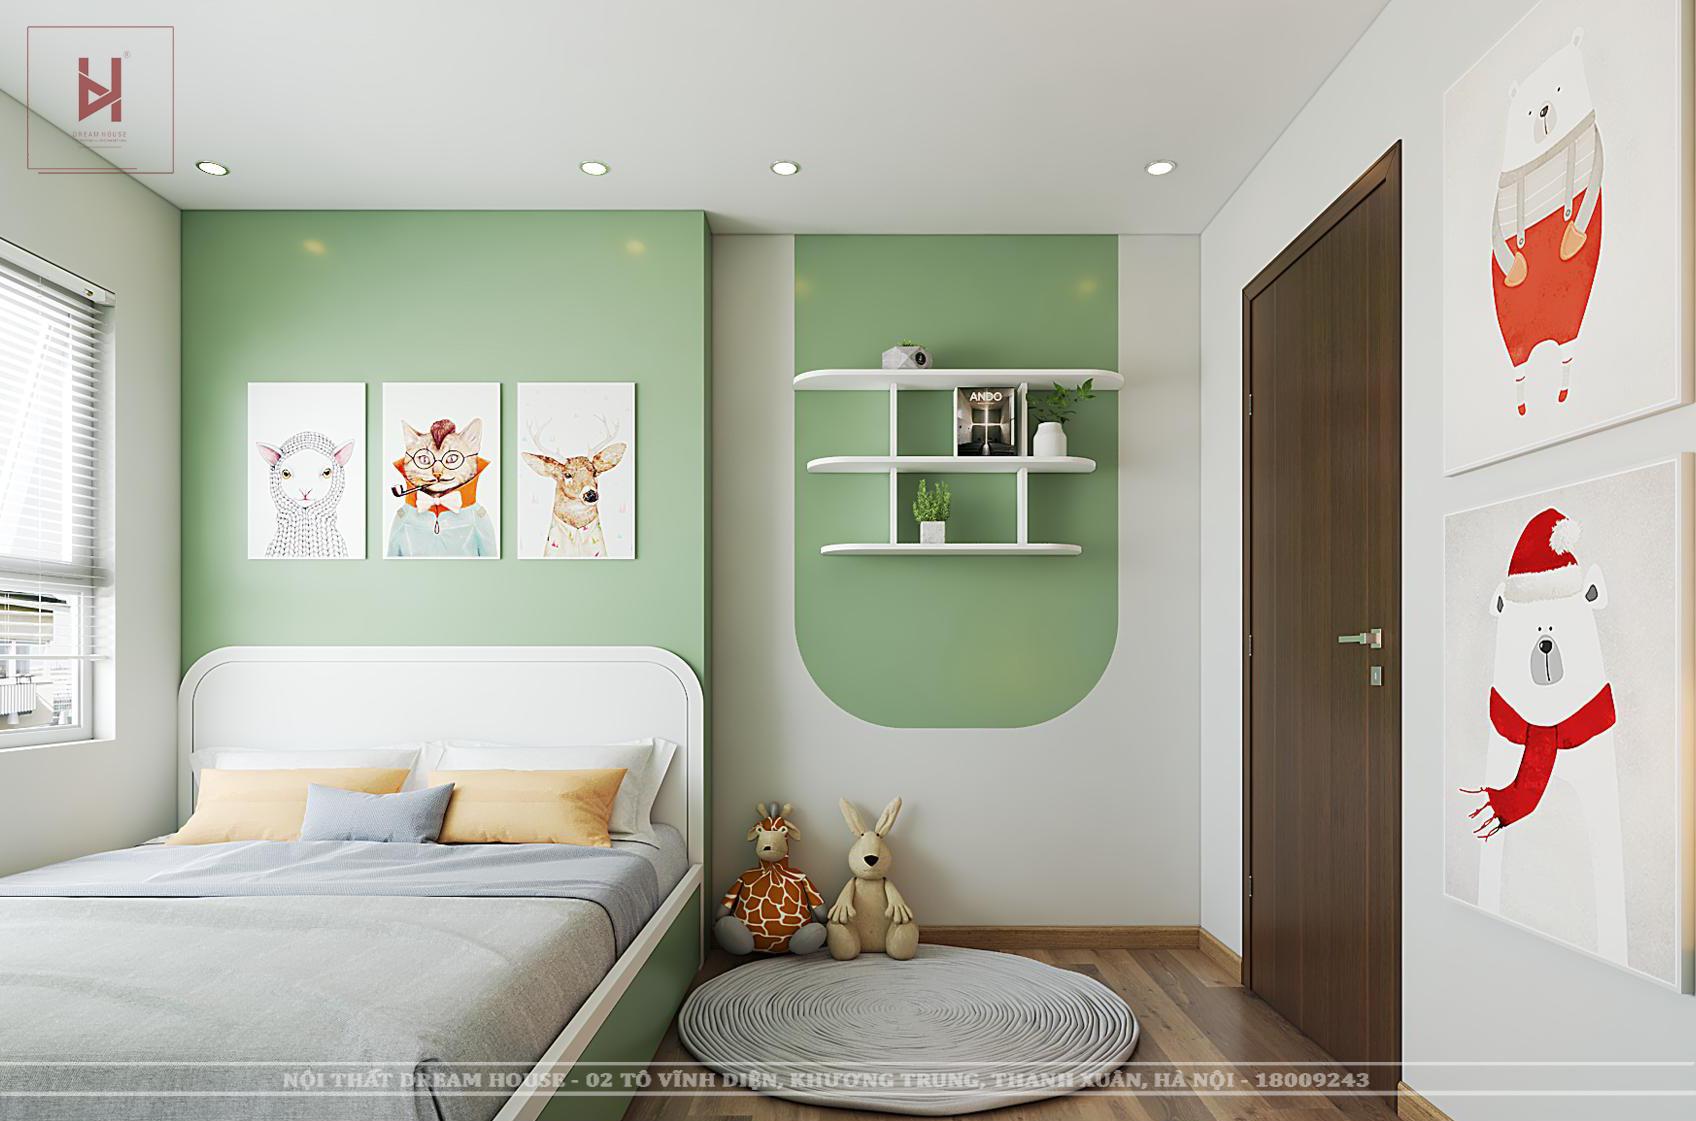 Phòng ngủ màu xanh lá cho bé hiện đại: Màu xanh lá là một trong những màu sắc yêu thích của các bé trong độ tuổi học đường. Với không gian phòng ngủ màu xanh lá cho bé hiện đại, bé sẽ cảm thấy thật sự thoải mái và thư giãn. Hãy khám phá những thiết kế độc đáo và lấy cảm hứng cho ngôi nhà bé yêu của bạn.